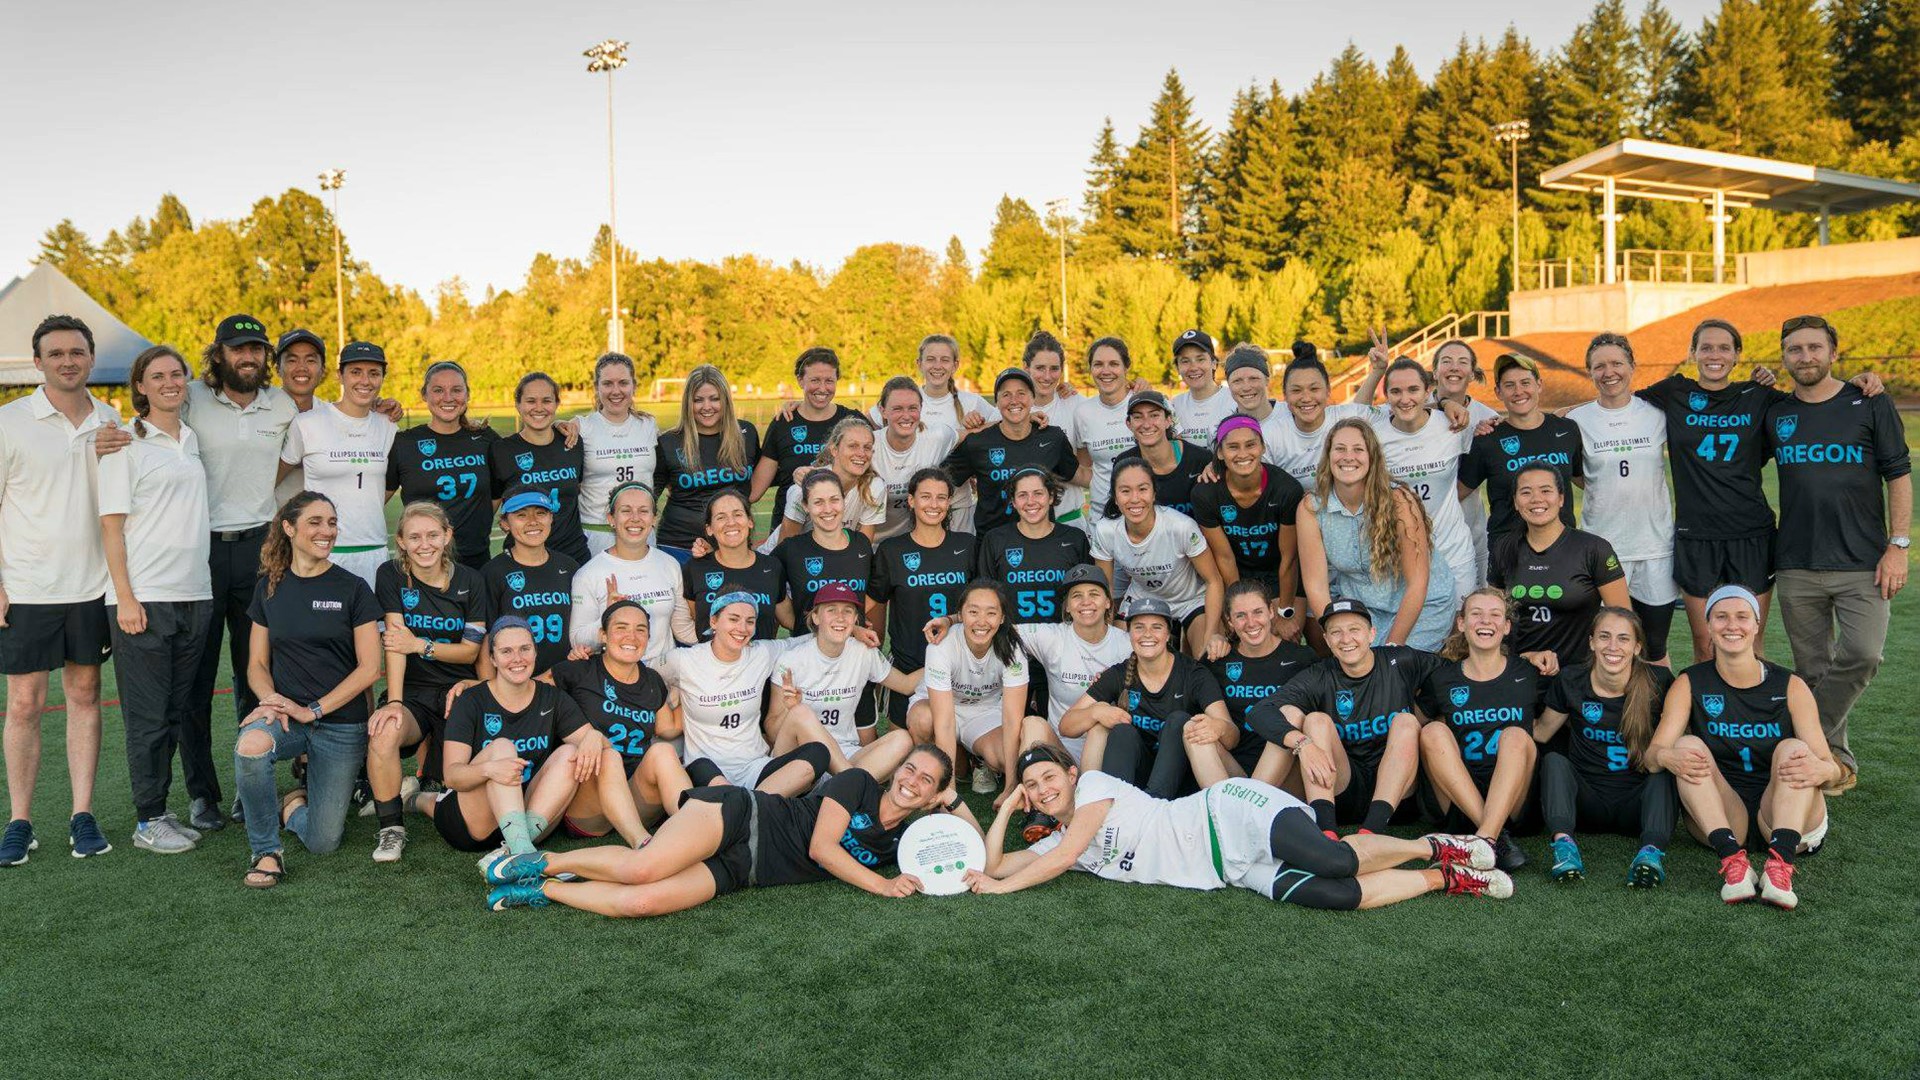 Oregon ultimate frisbee team plays Australian team